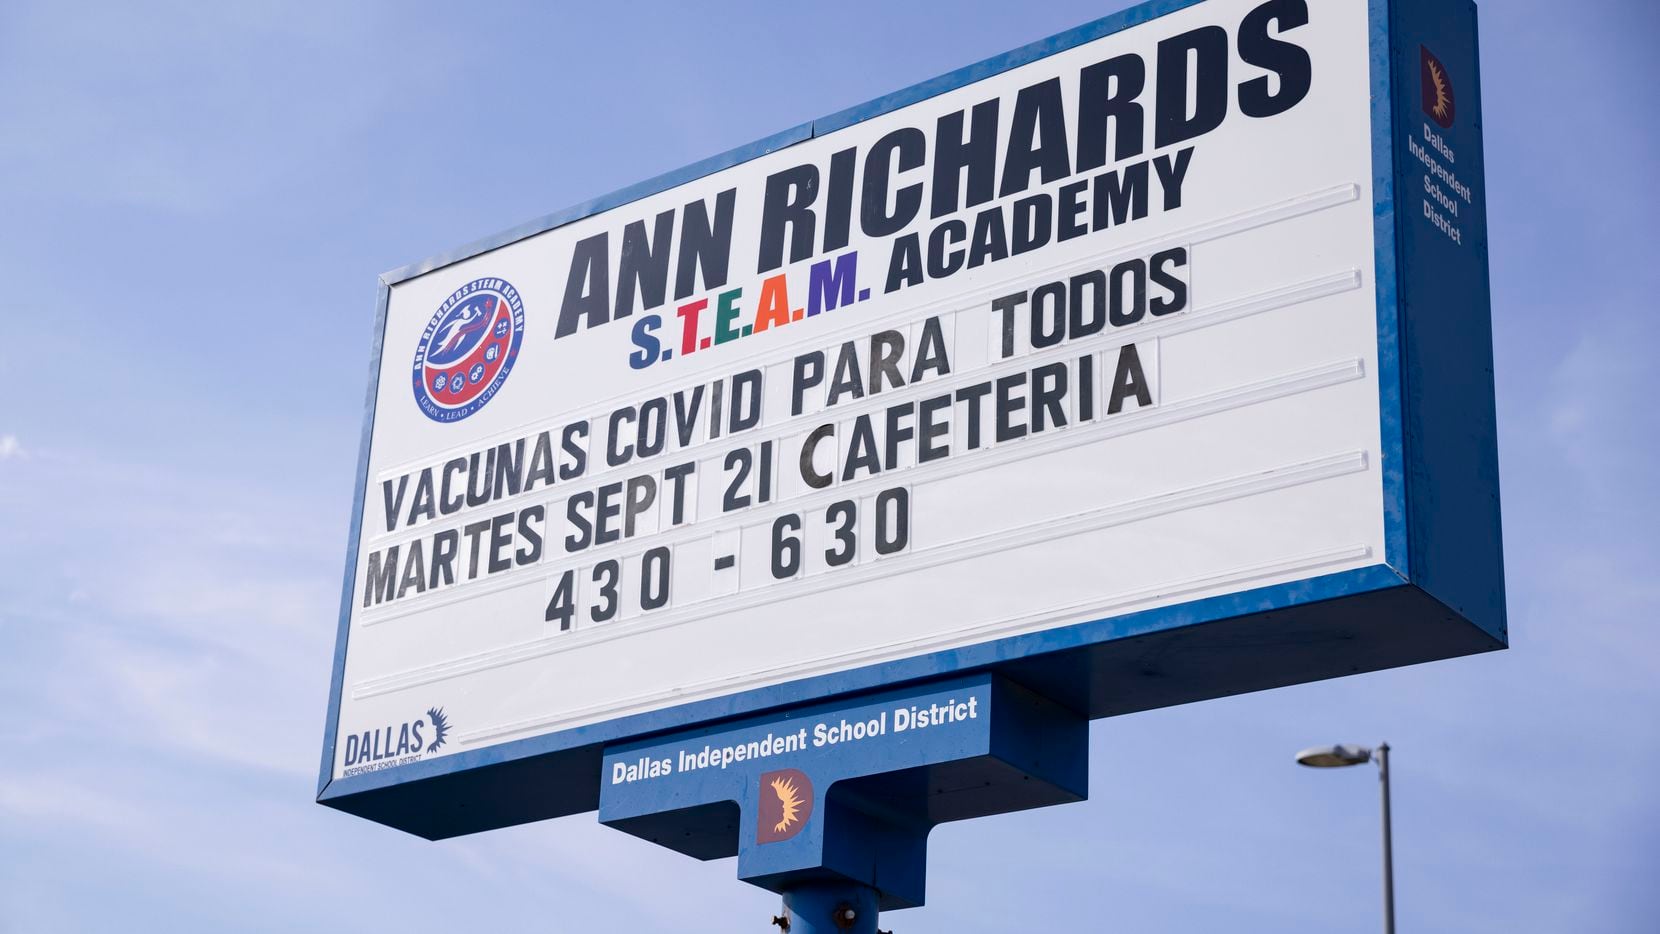 Un cartel anuncia clínicas gratuitas de vacunación contra covid-19 en la Ann Richards Middle School de Dallas, el 21 de septiembre de 2021.